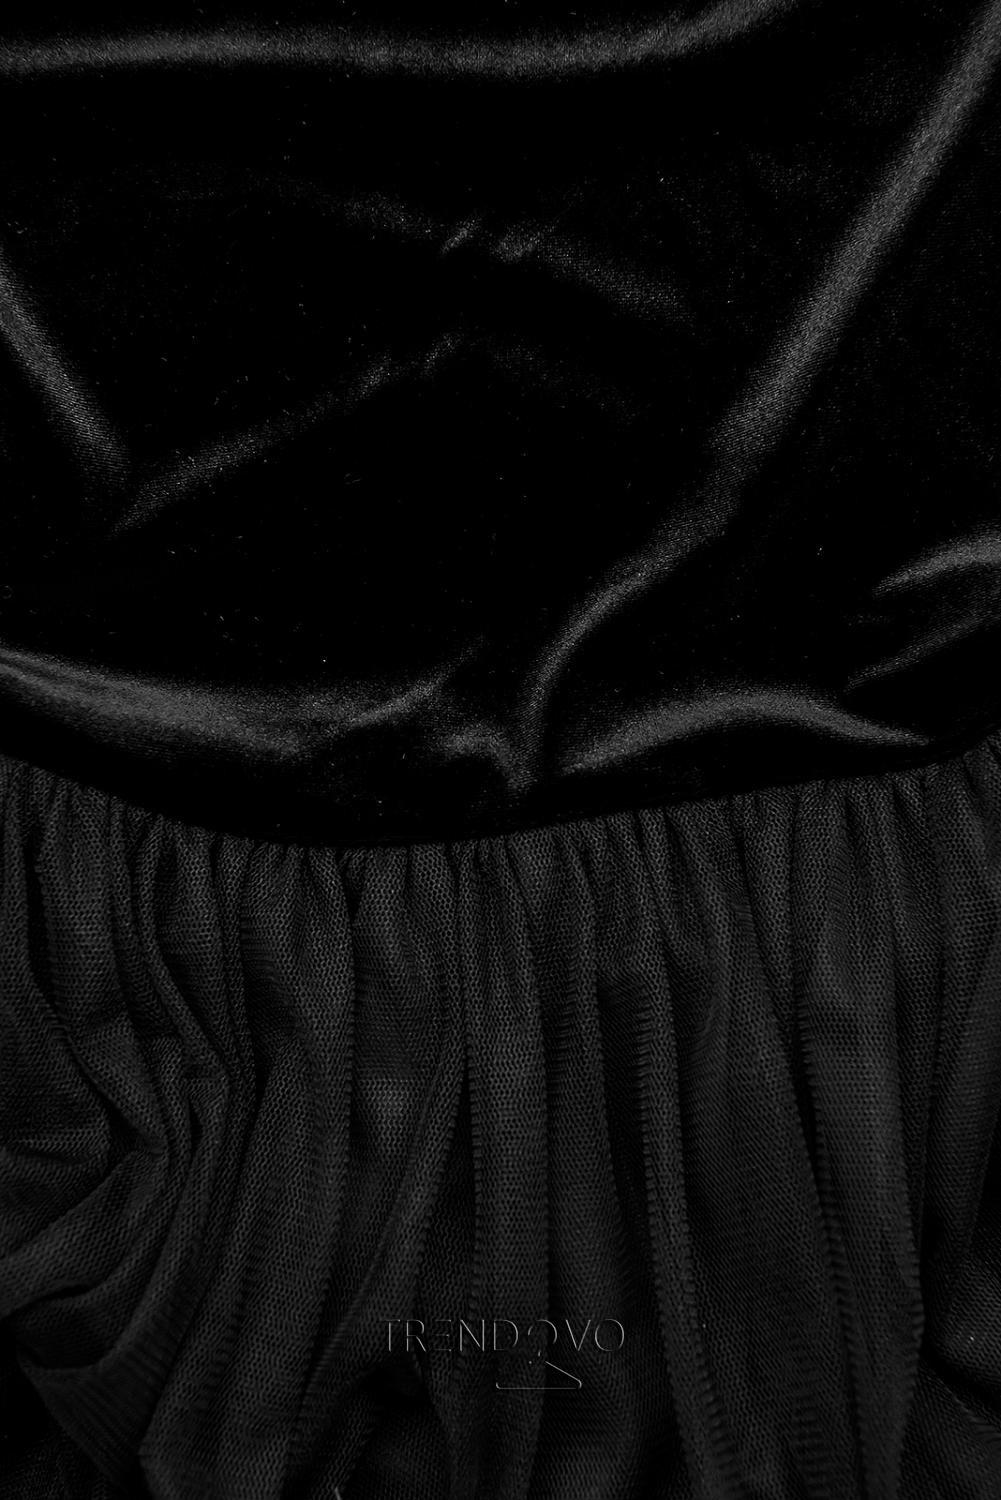 Černé šaty s tylovou sukní